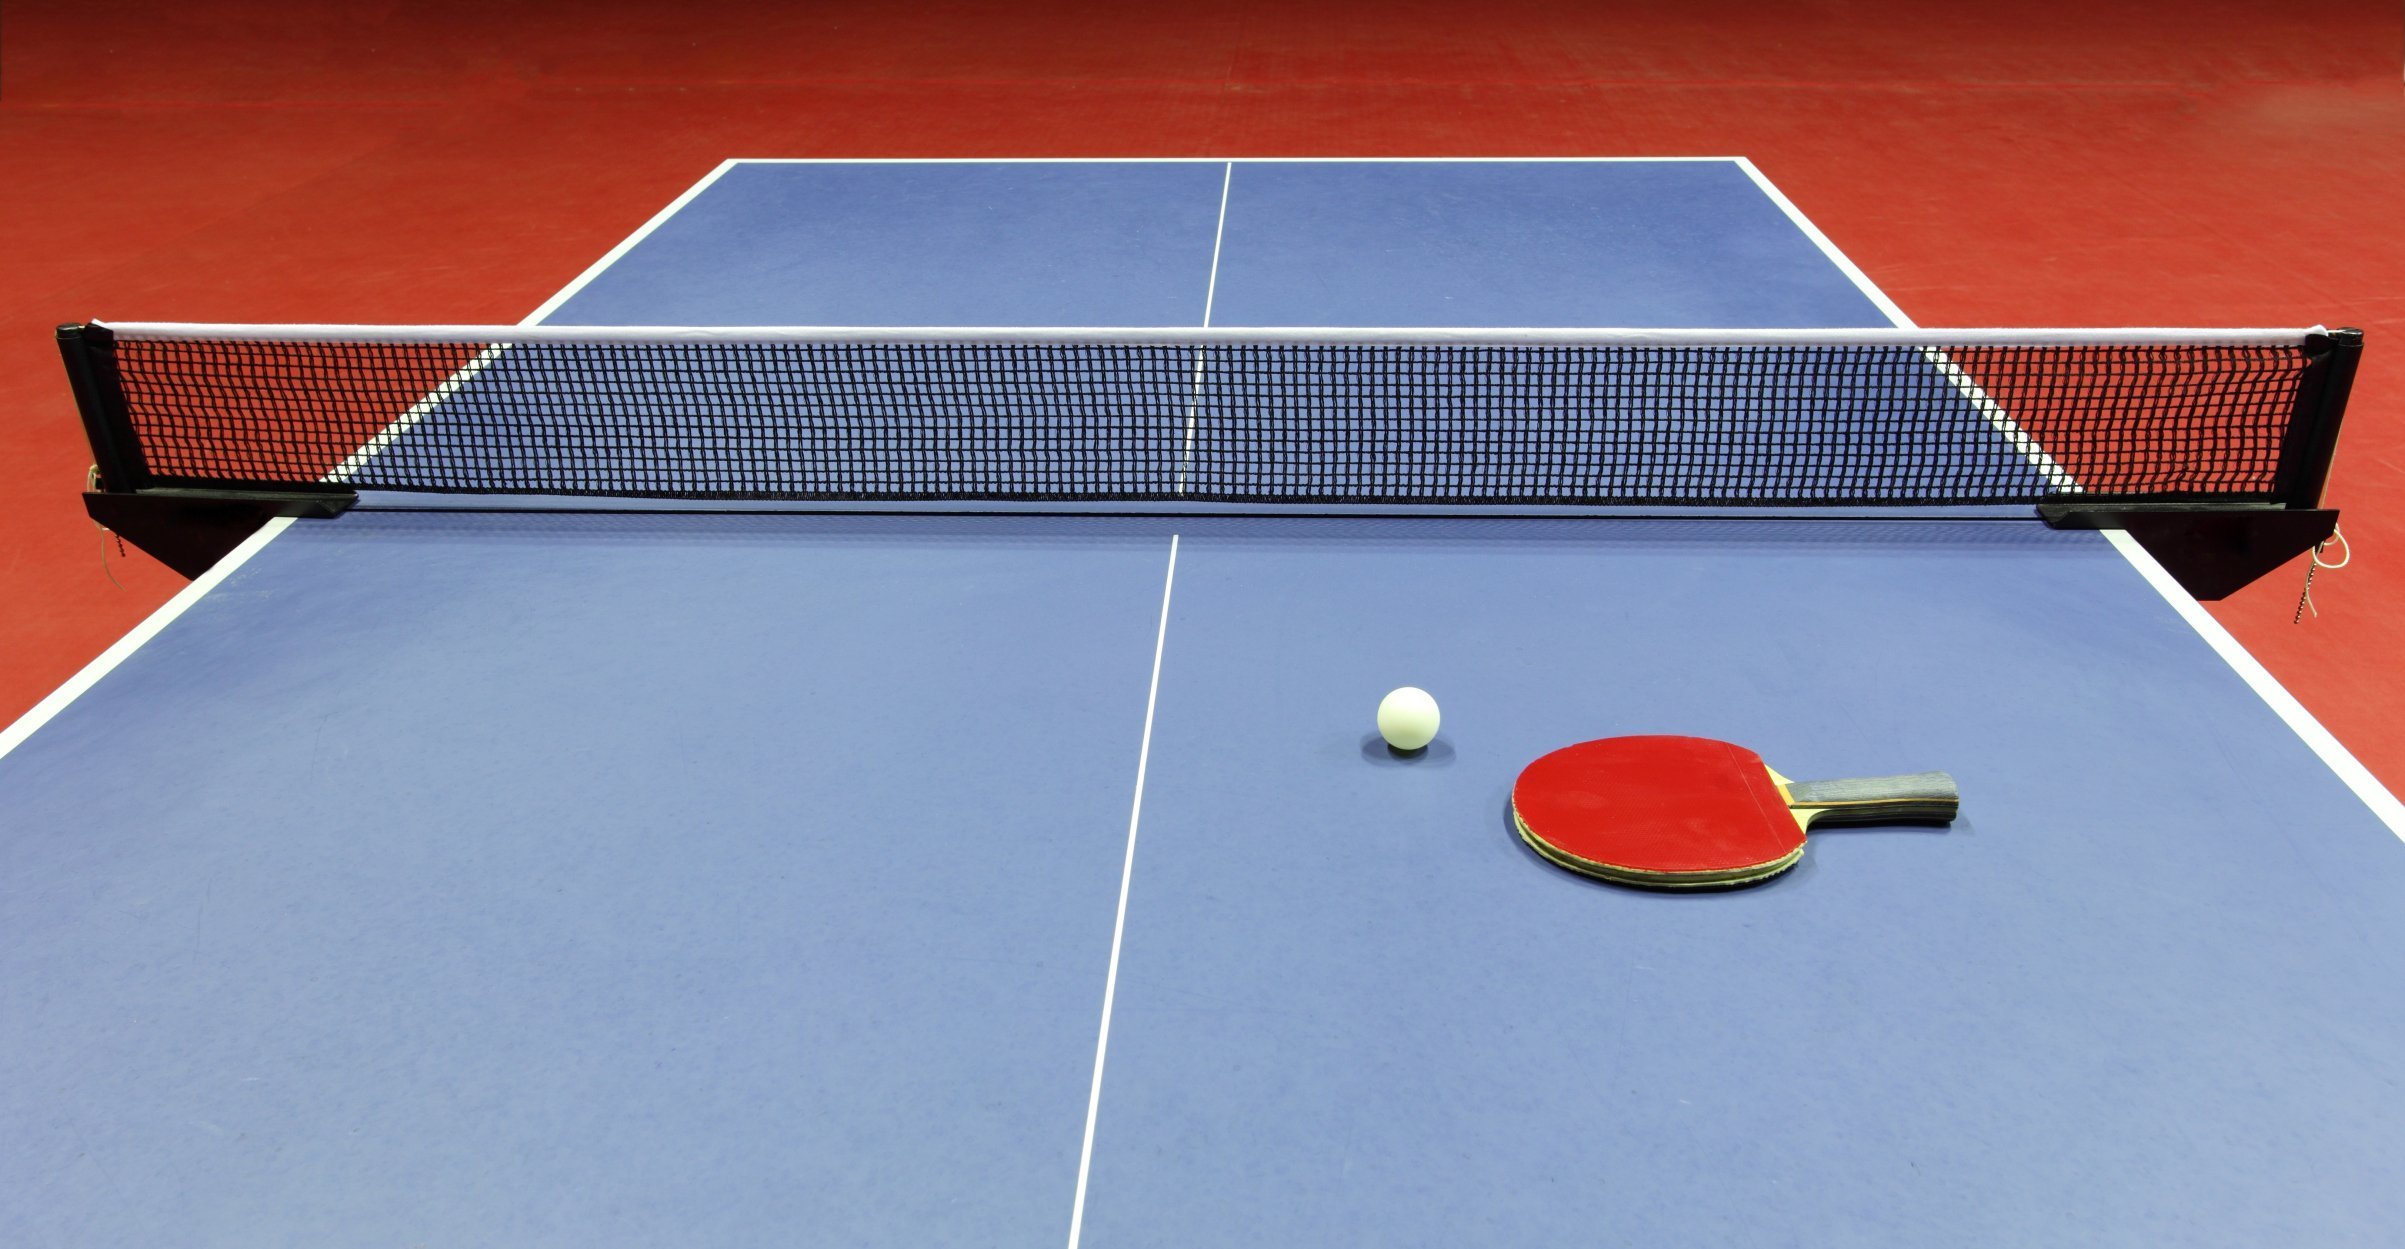 Теннис игра с ракетками. Настольный теннис (стол т1223). Stol Tennis” “Ping-Pong”. Пинпонг и настольный теннис. Теннисный стол пинг понг.